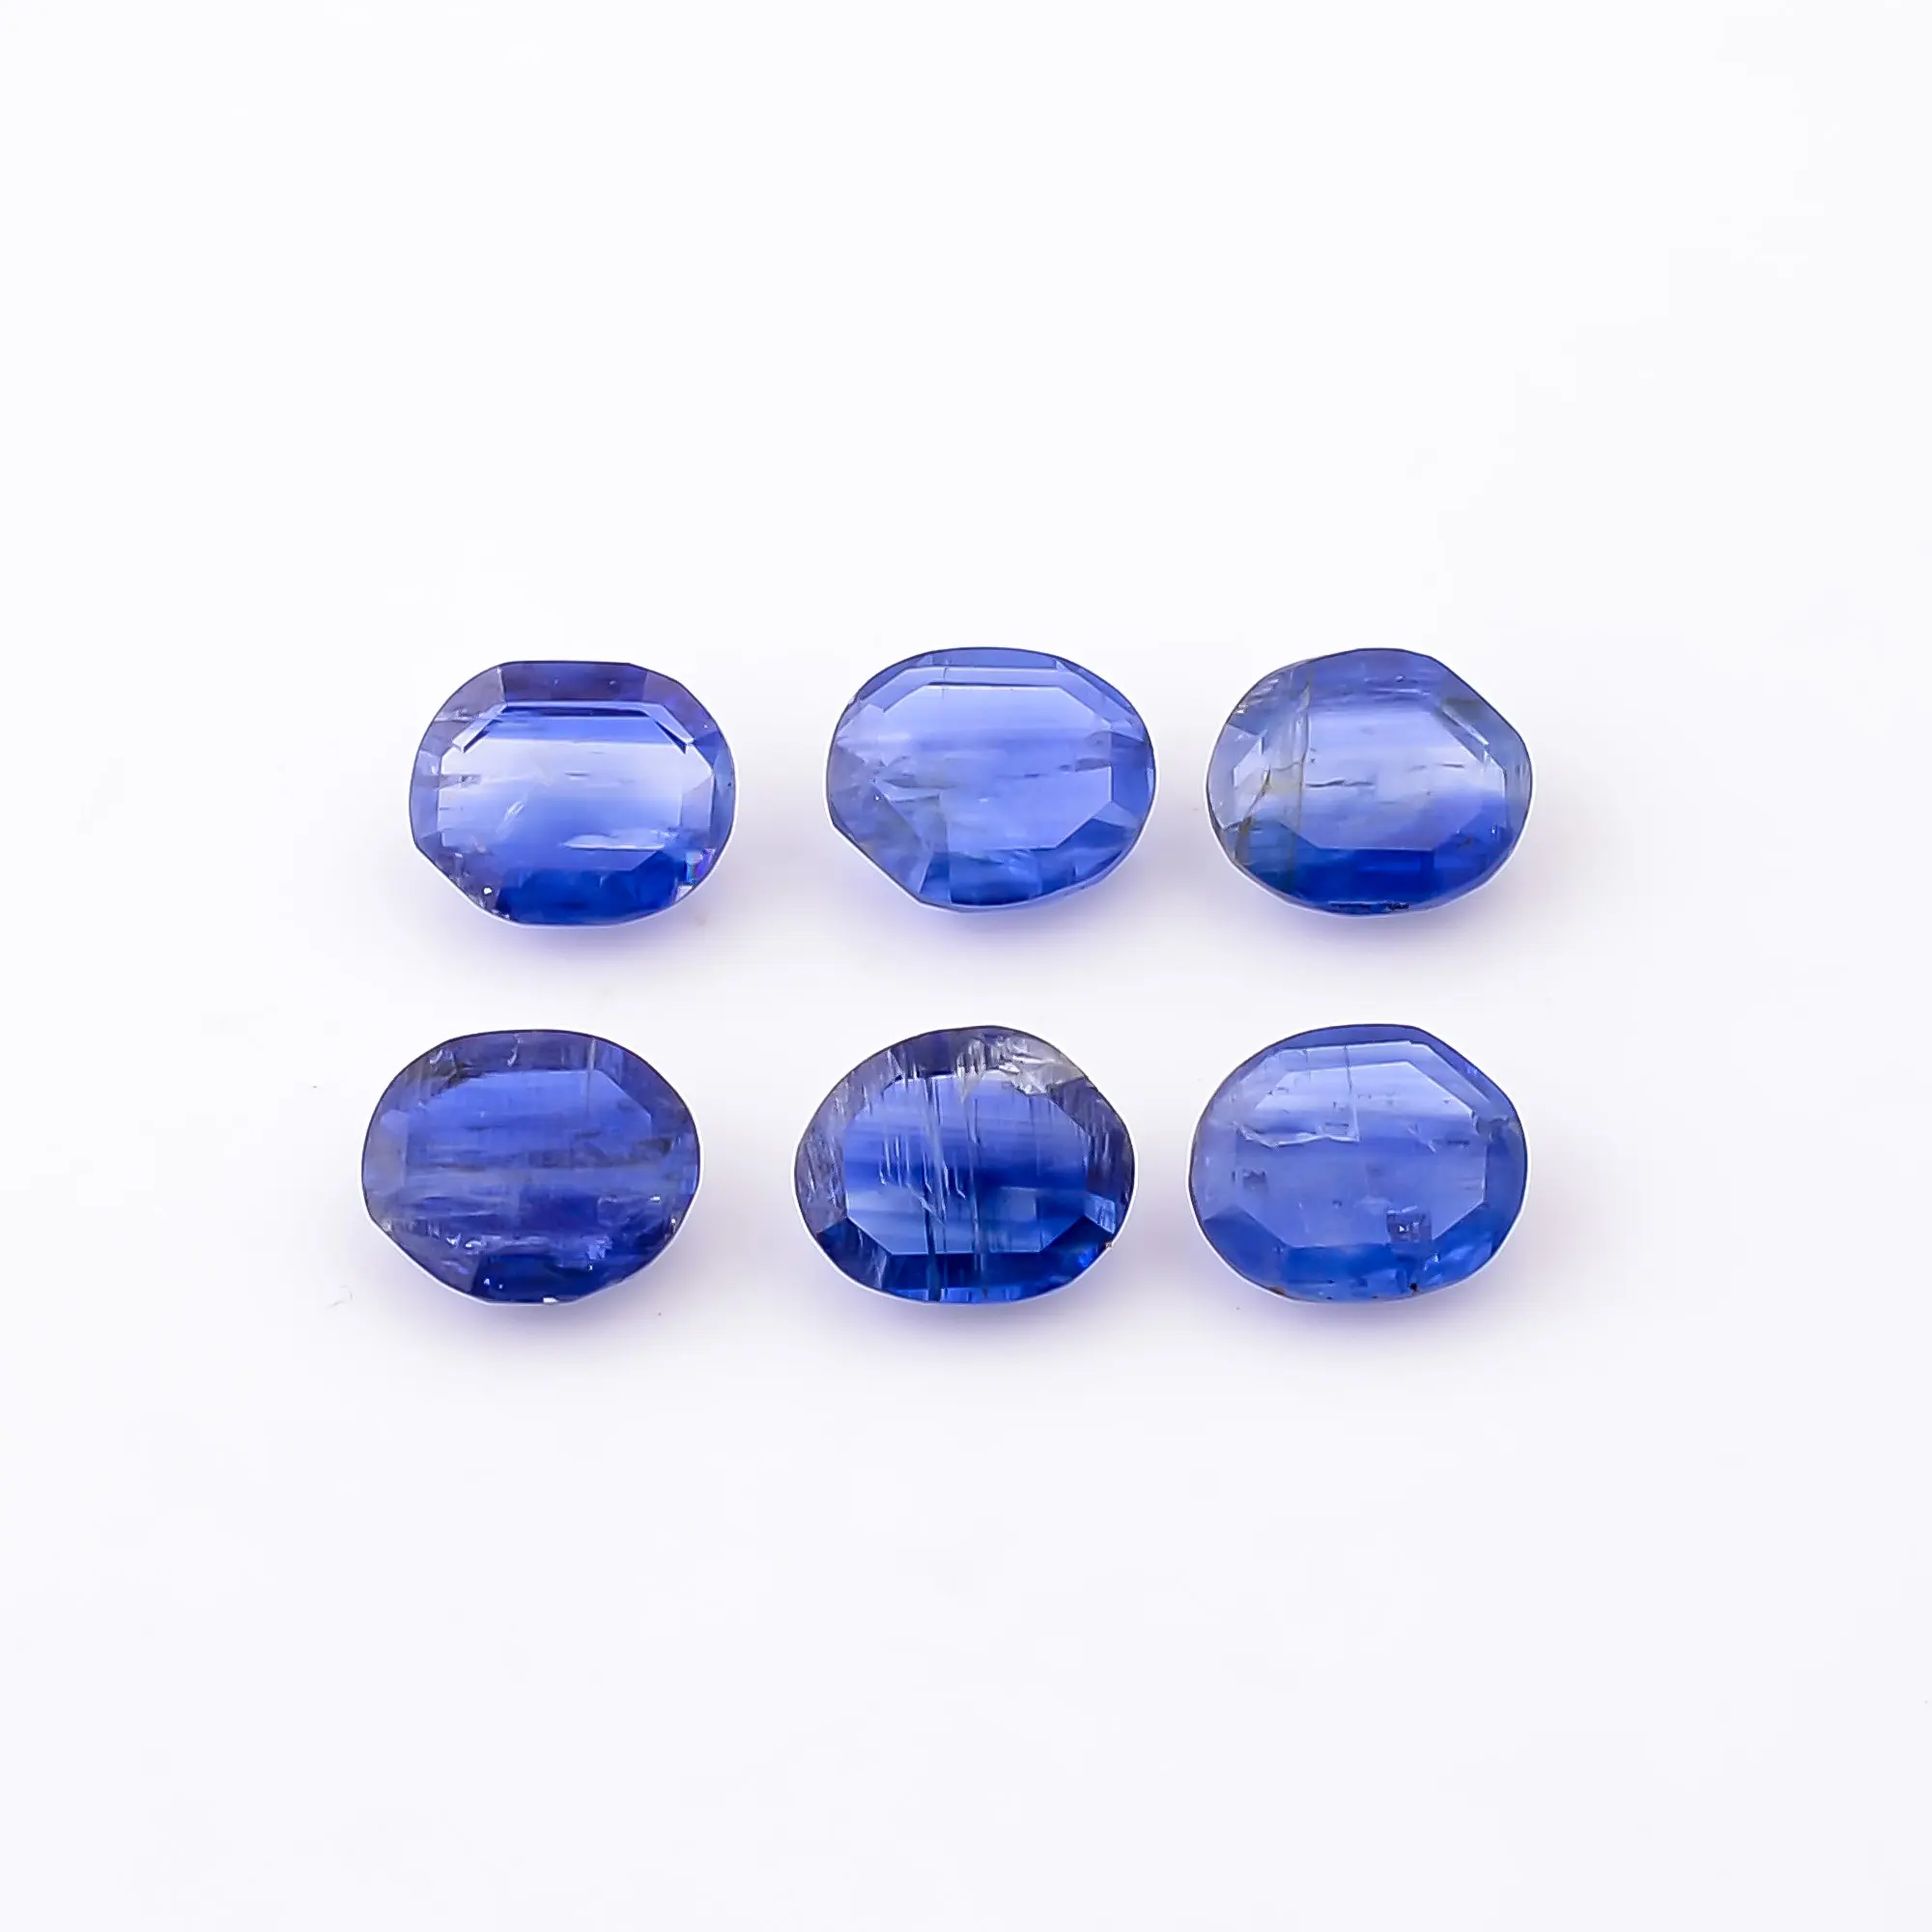 Оптовая продажа, драгоценный камень для изготовления ювелирных изделий, граненый калиброванный кианитовый драгоценный камень овальной формы, причудливый Ограненный Синий Кианит